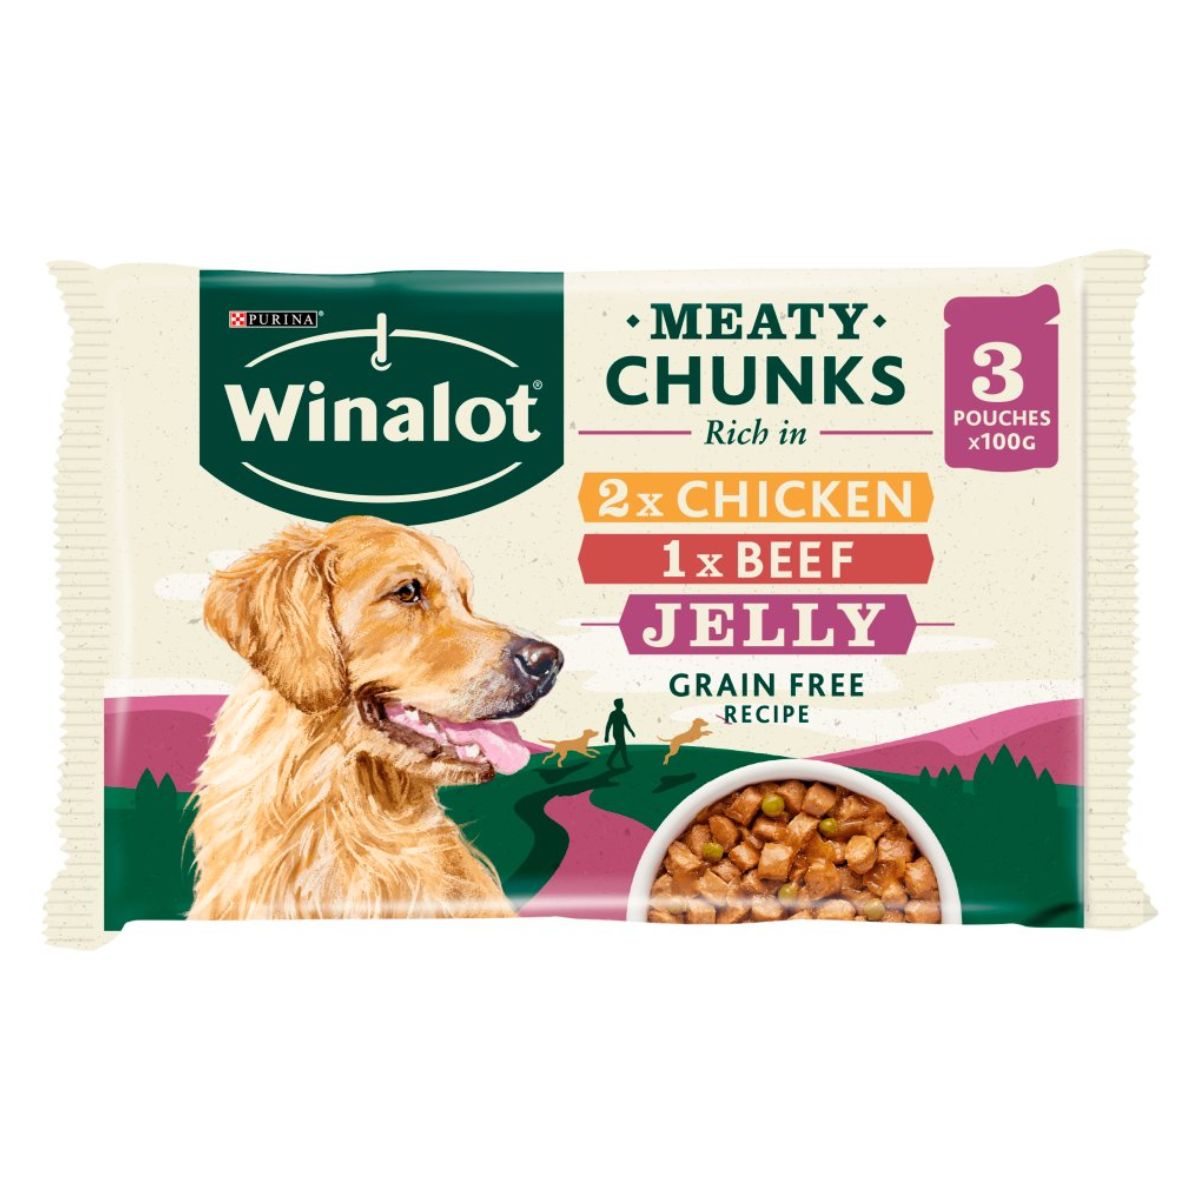 Purina - Winalot Meaty Chunks in Jelly - 3 x 100g dog food.